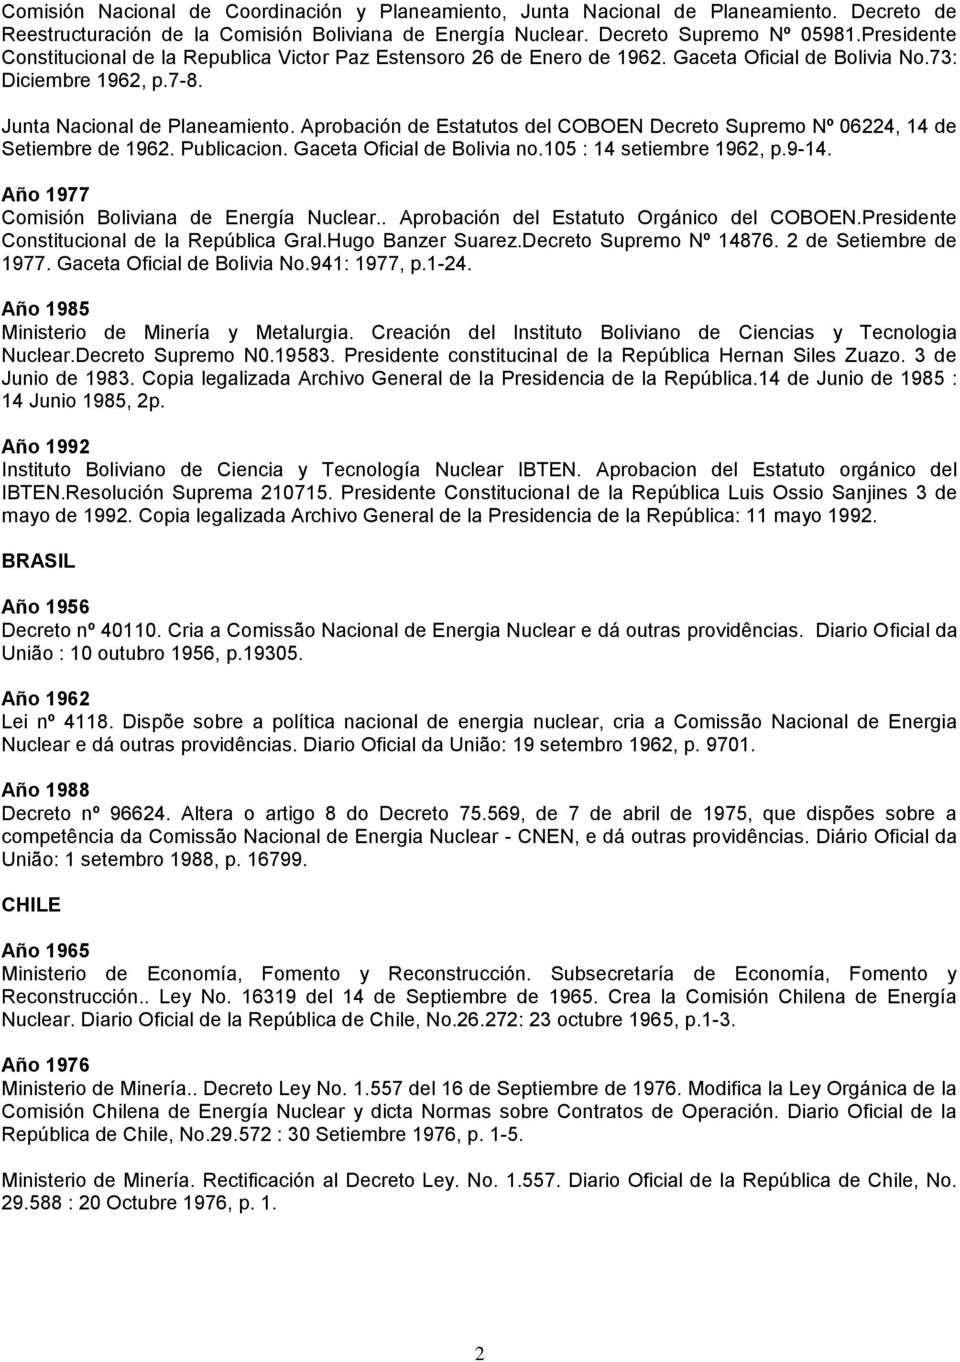 Aprobación de Estatutos del COBOEN Decreto Supremo Nº 06224, 14 de Setiembre de 1962. Publicacion. Gaceta Oficial de Bolivia no.105 : 14 setiembre 1962, p.9-14.